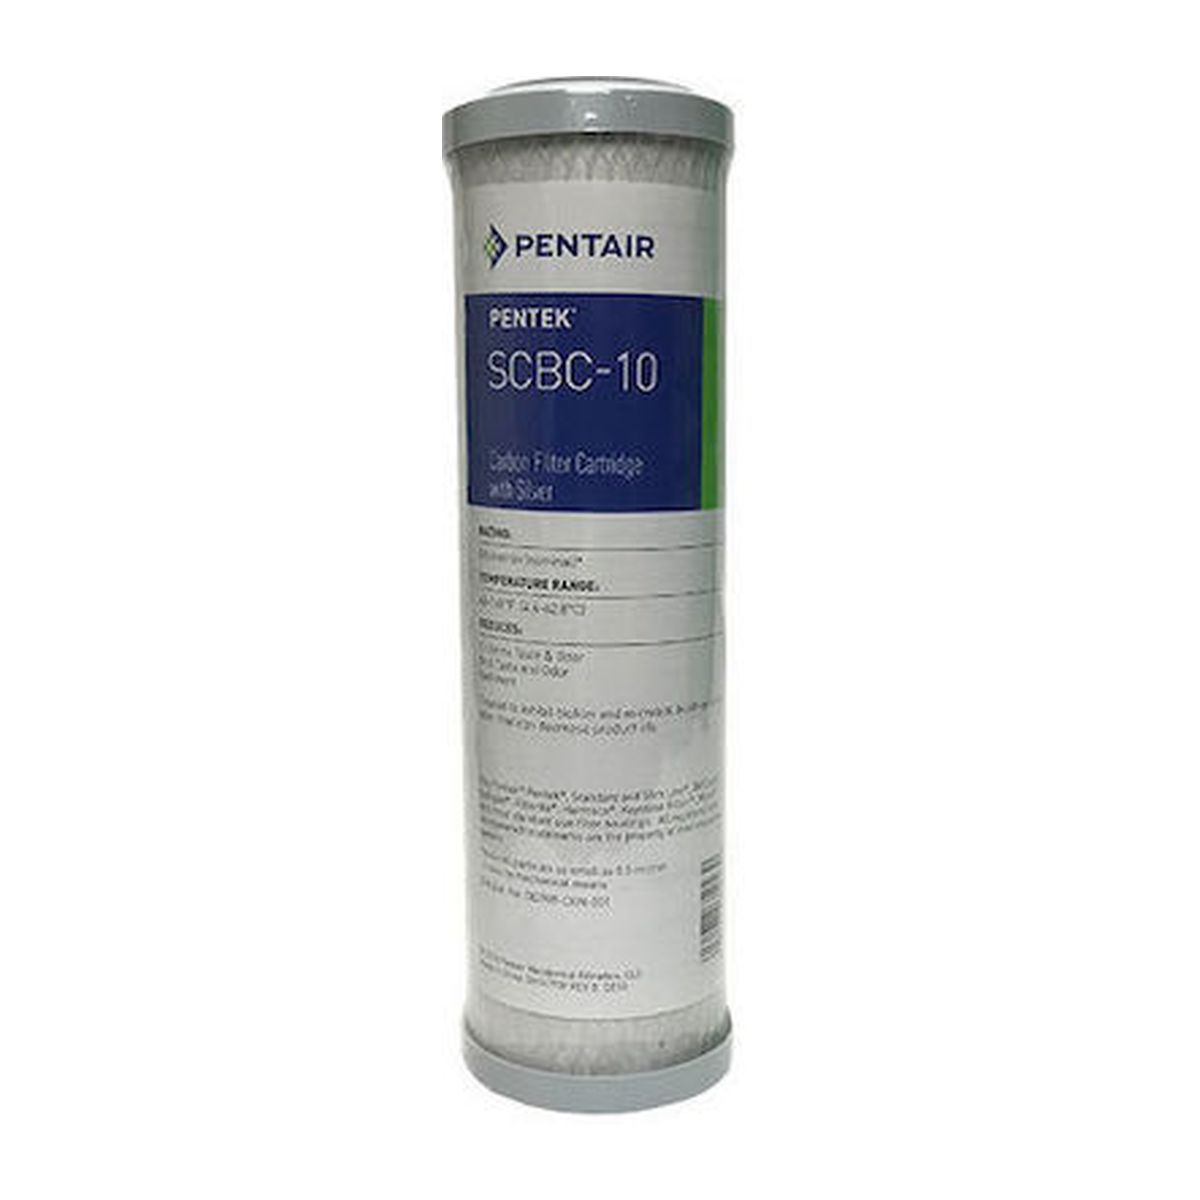 Ανταλλακτικό Φίλτρο Ενεργού Άνθρακα SCBC-10 0.5μm Pentair Pentek